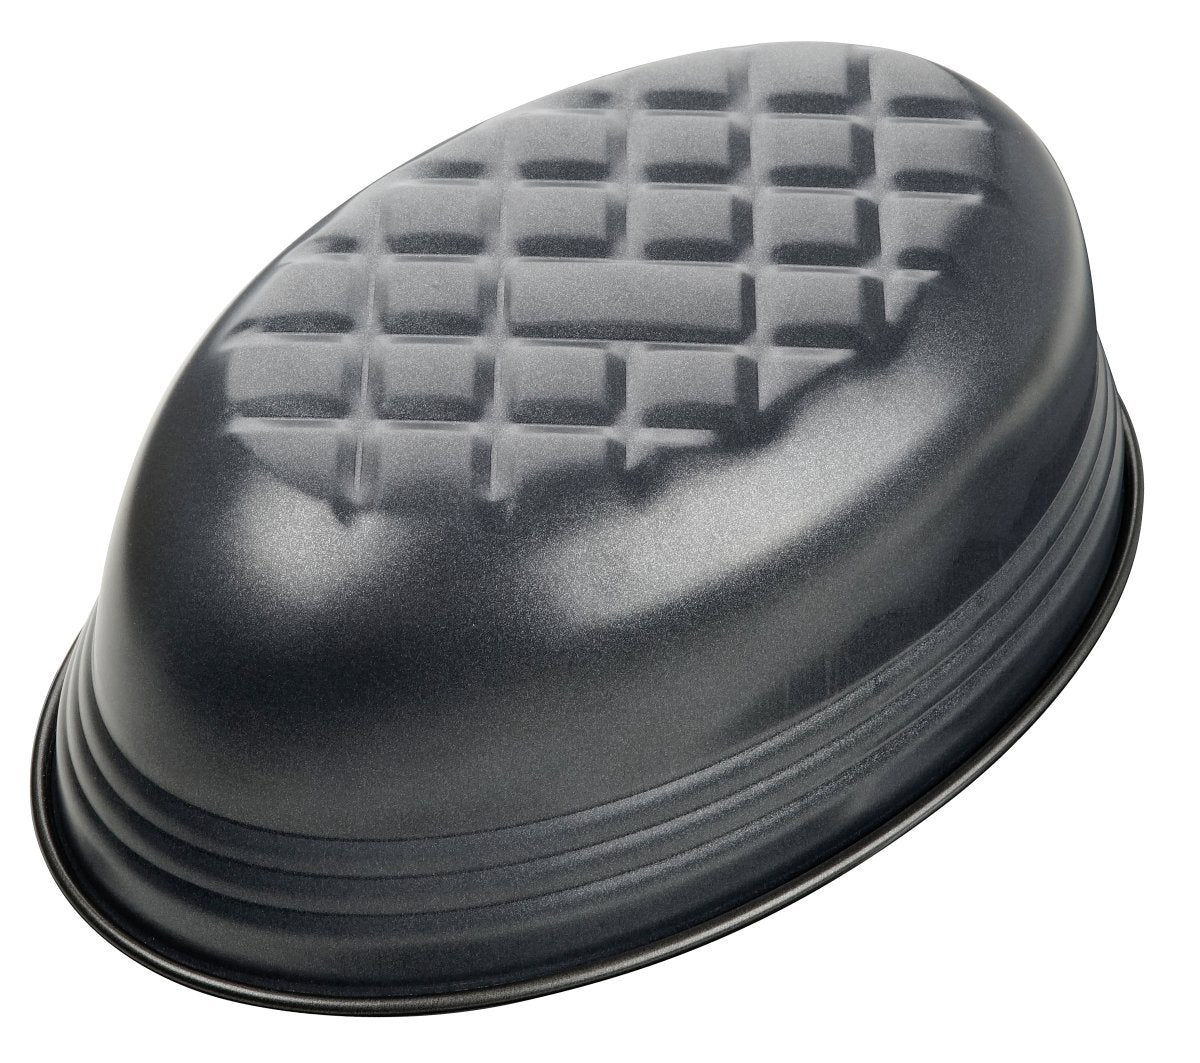 Zenker "Black Metallic" oval bread baking mould, steel with nonstick coating